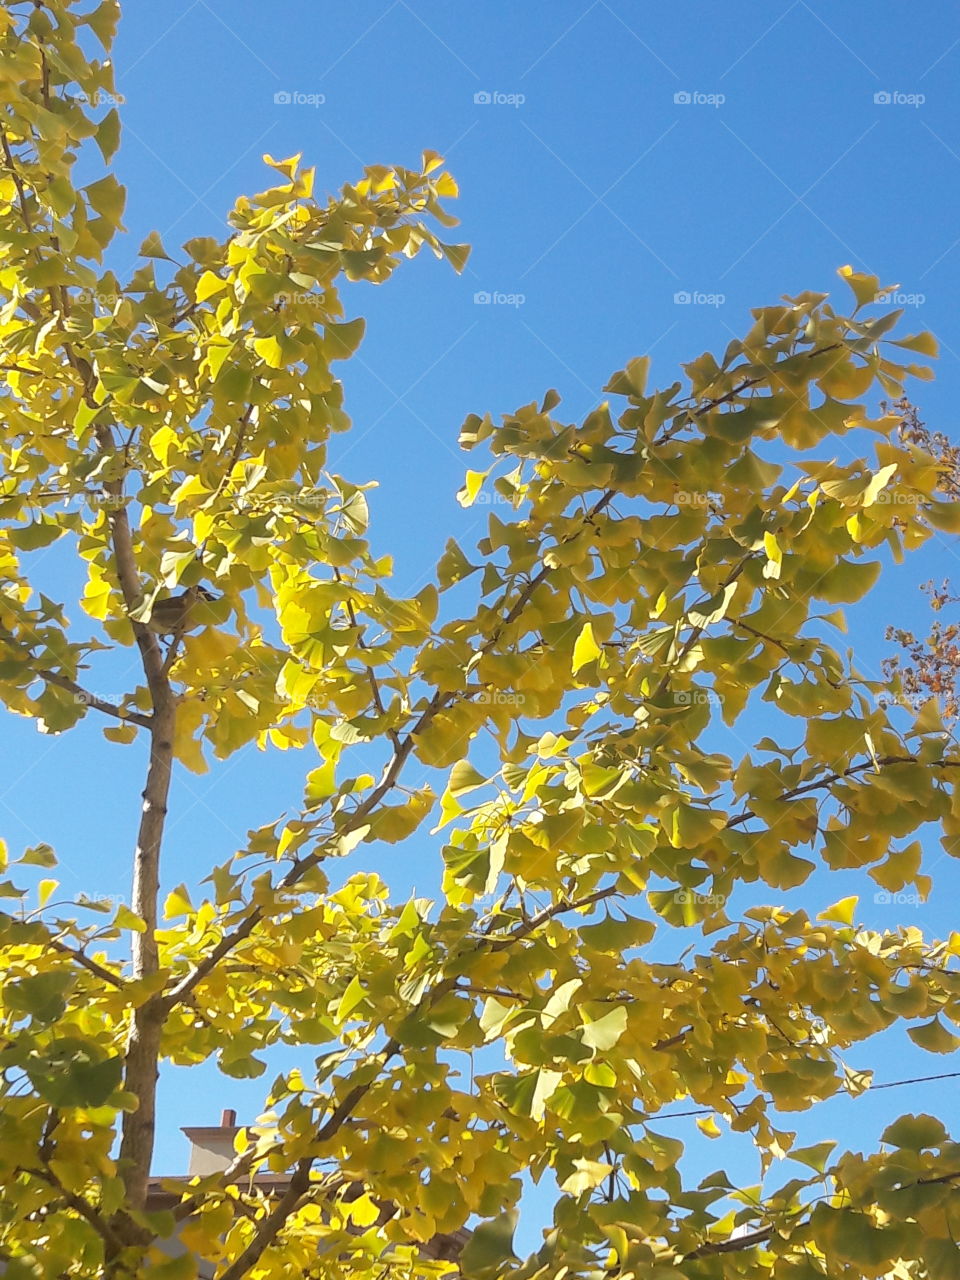 Fall foliage in yellow.